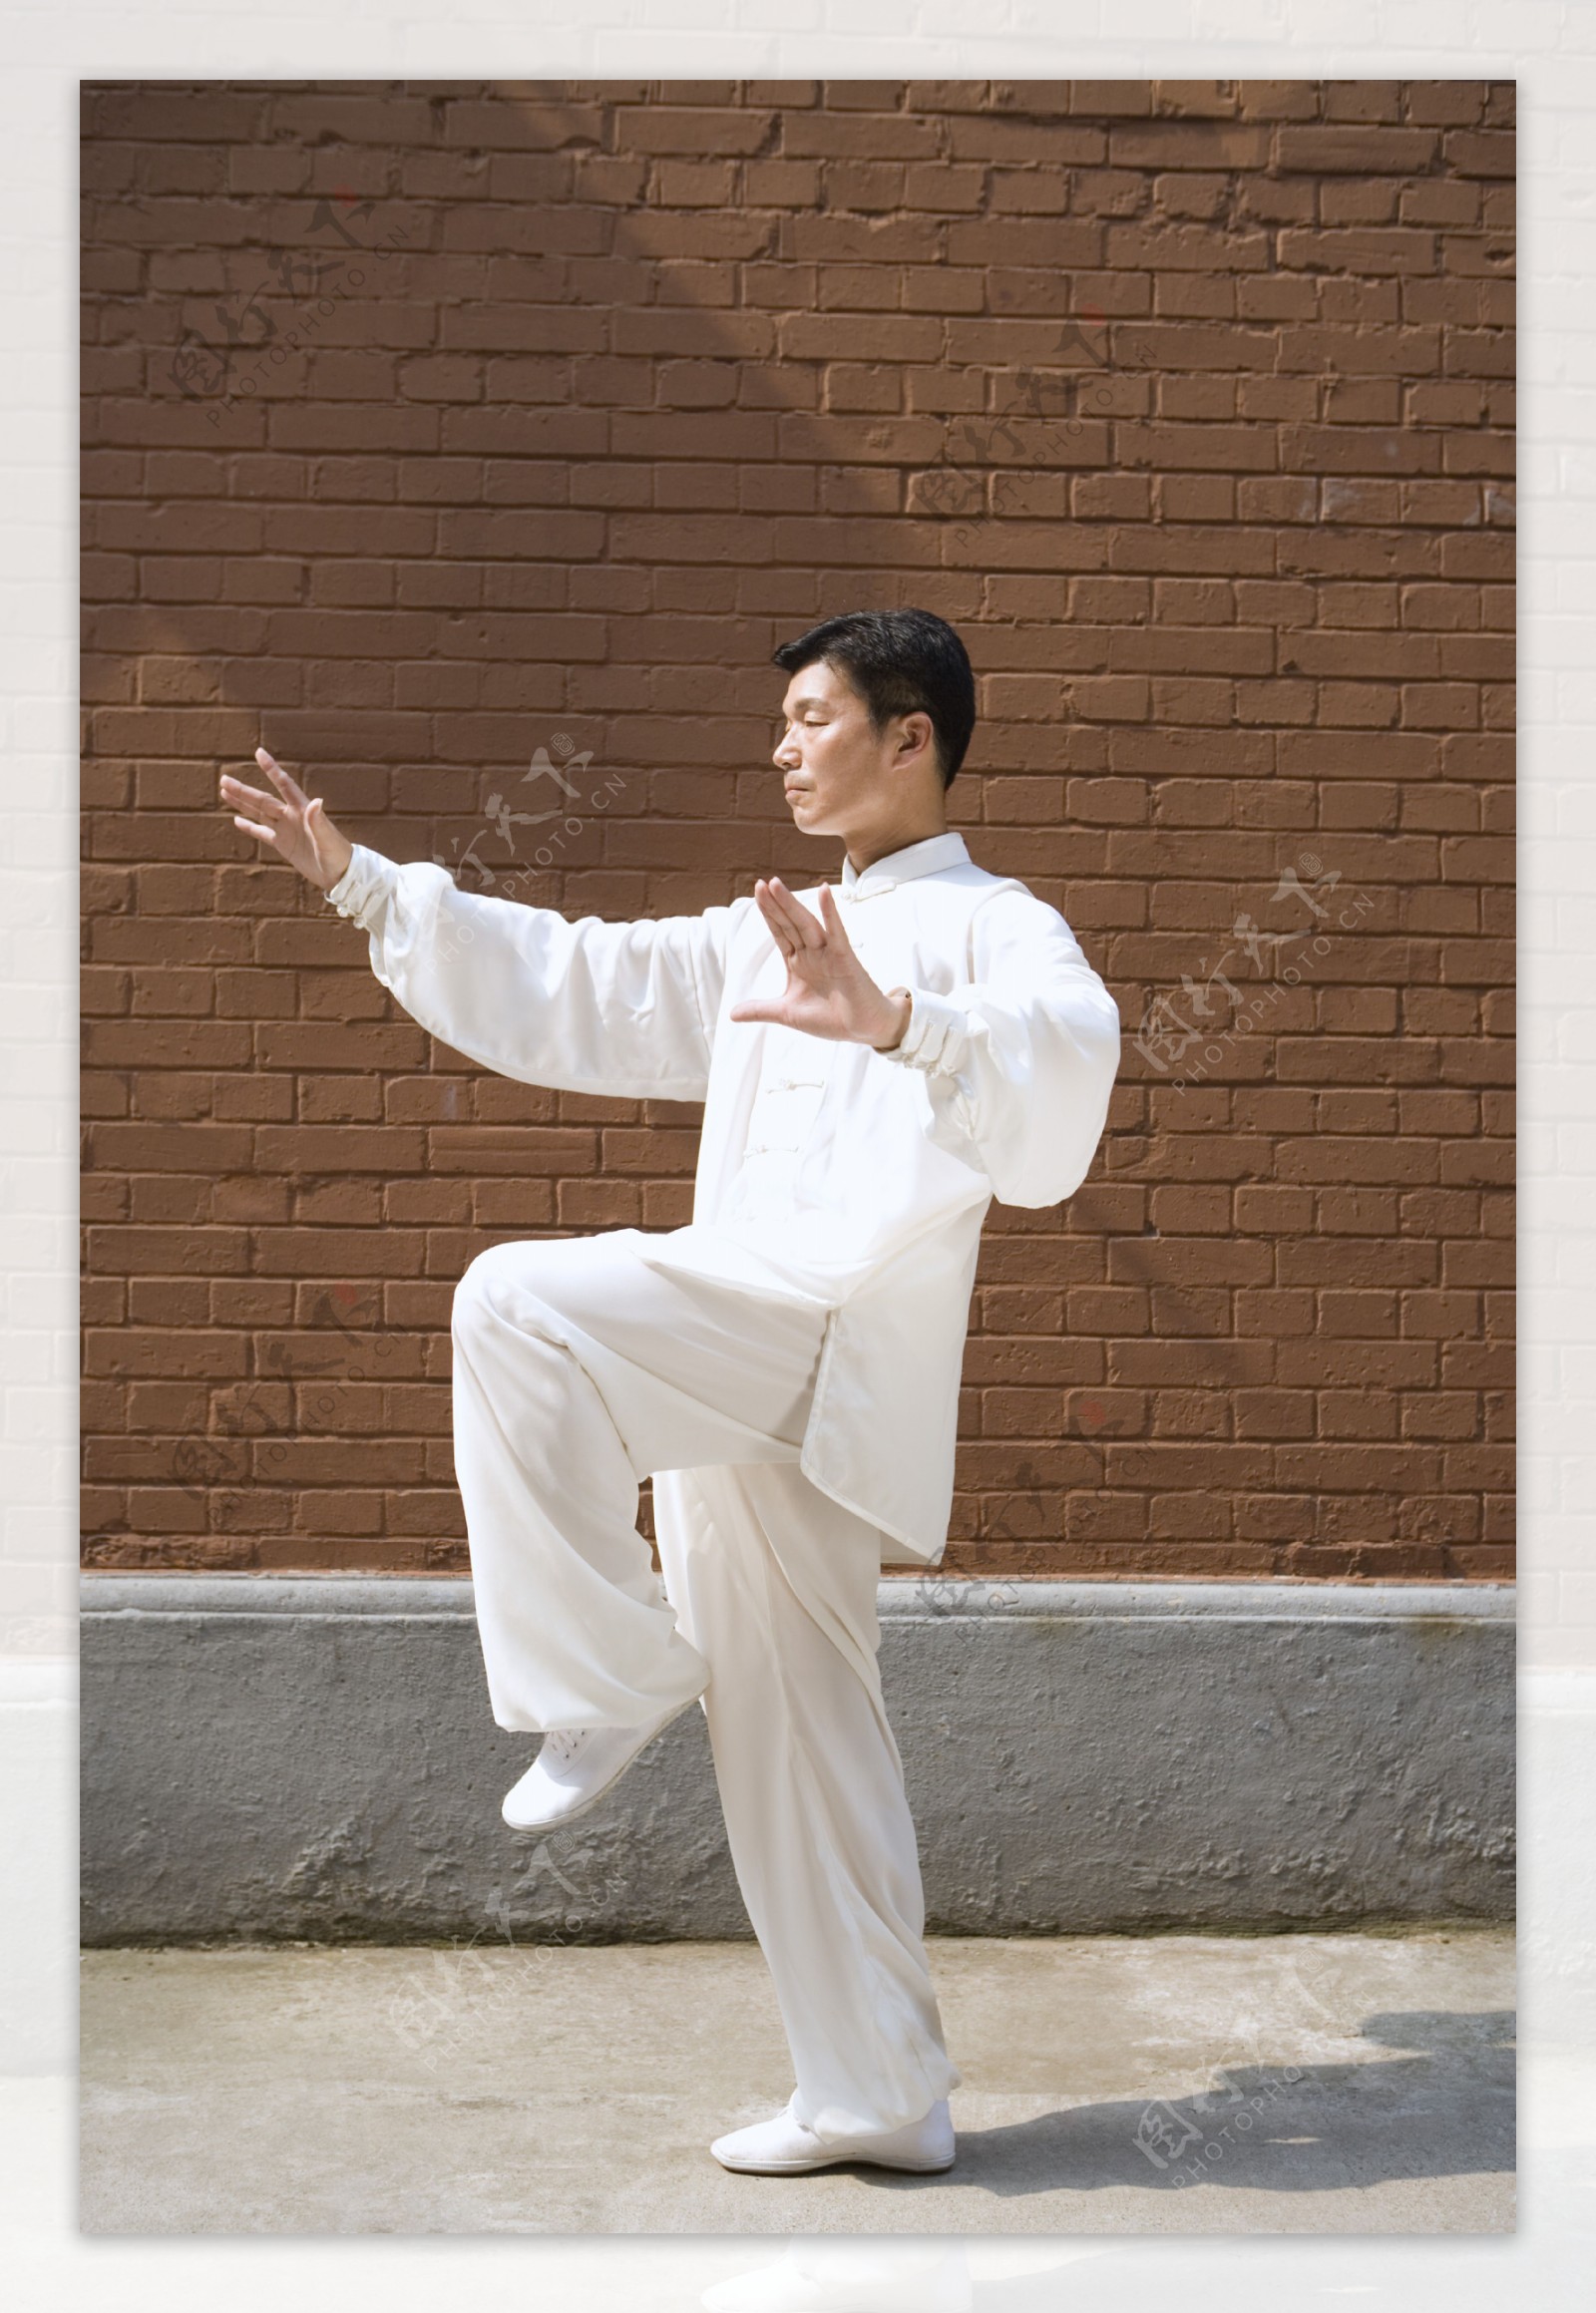 砖墙旁练太极拳的中年师傅图片